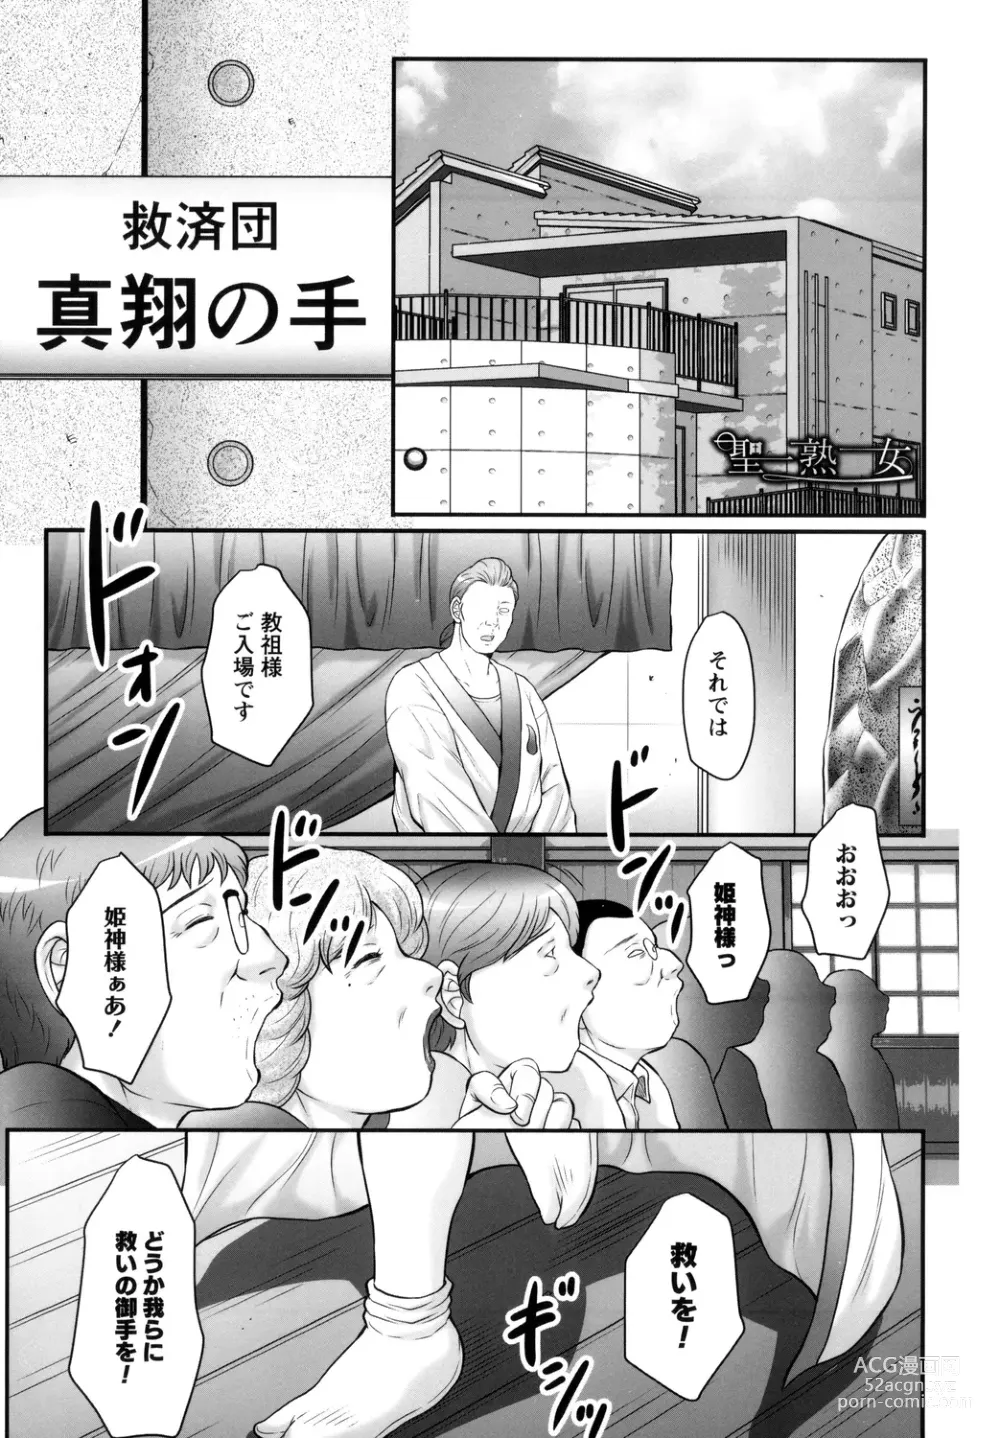 Page 5 of manga Midaragami Seinaru Jukujo ga Mesubuta Ika no Nanika ni Ochiru made